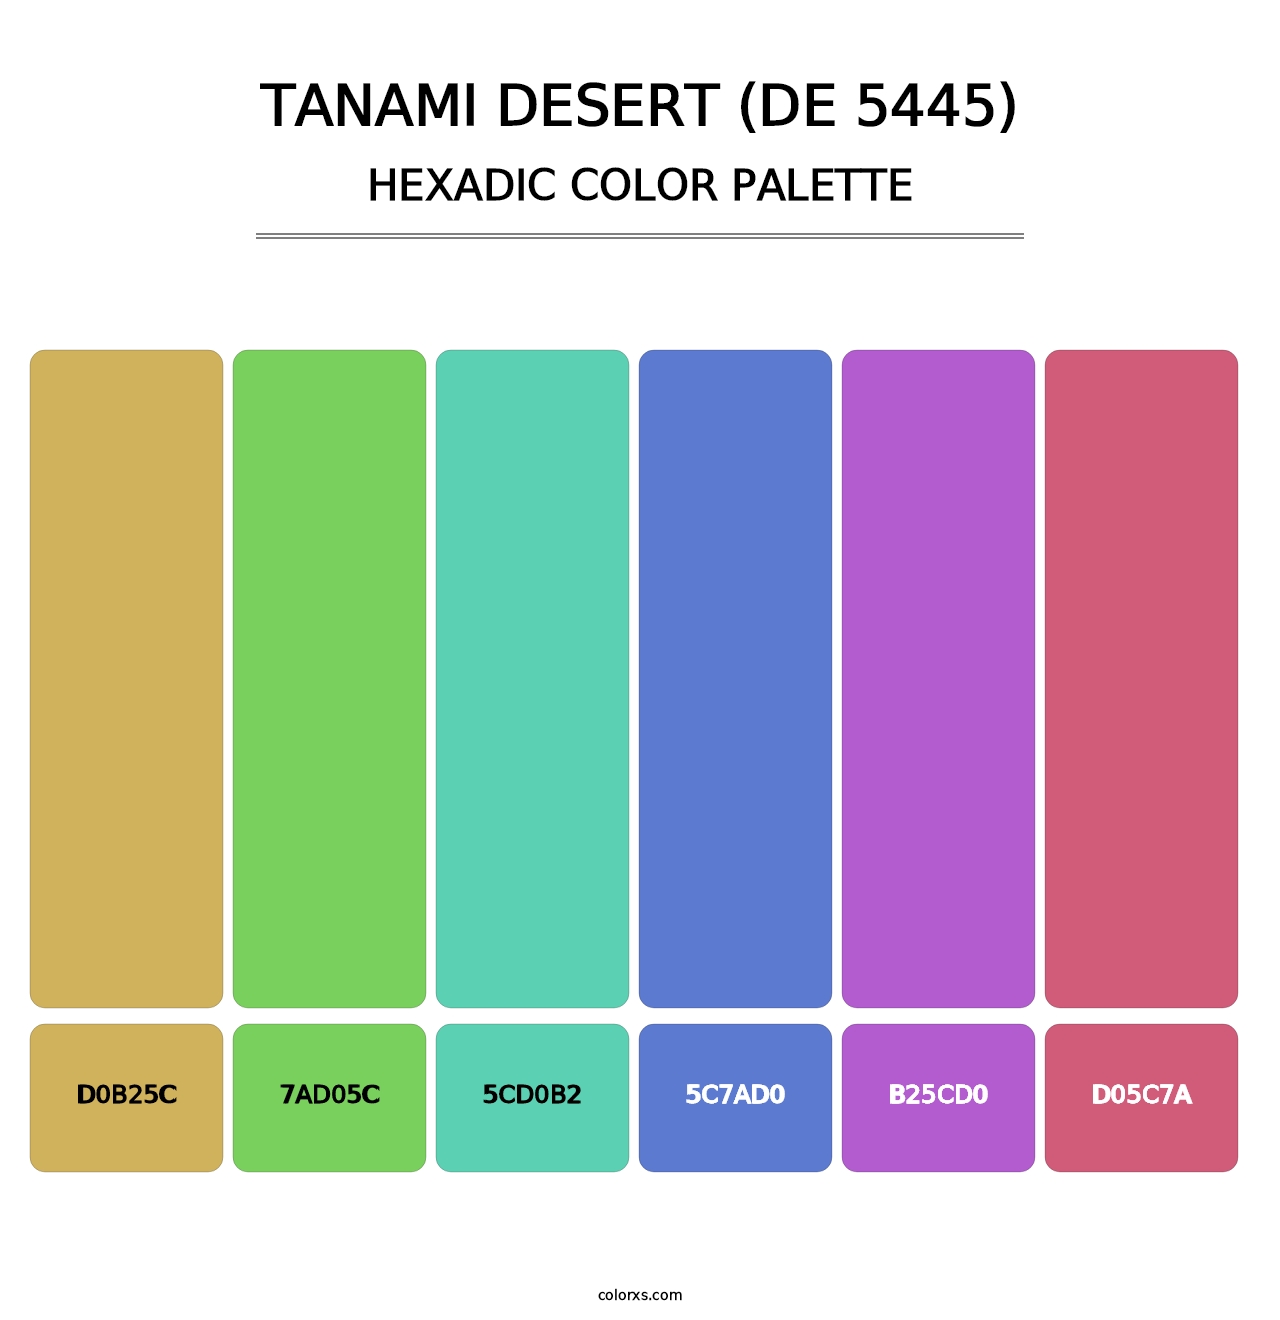 Tanami Desert (DE 5445) - Hexadic Color Palette